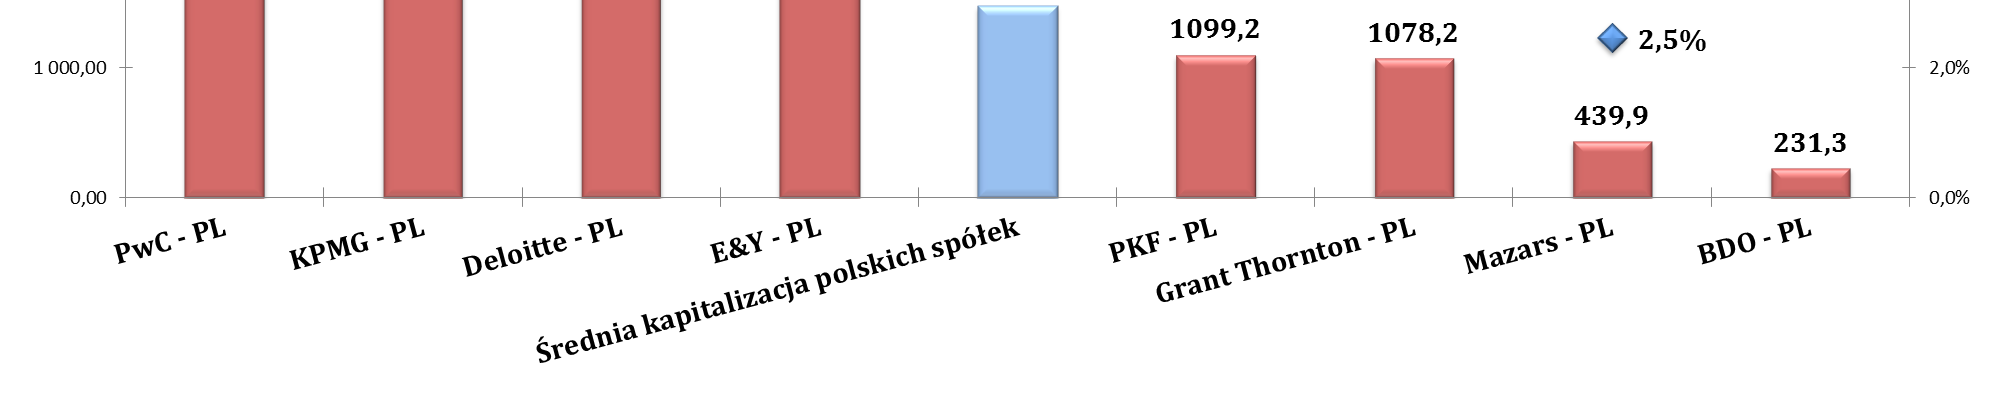 Źródło: opracowanie własne Biura KNA na podstawie danych z Rocznika giełdowego 2014 (www.gpw.pl/analizy_i_statystyki) oraz danych własnych.